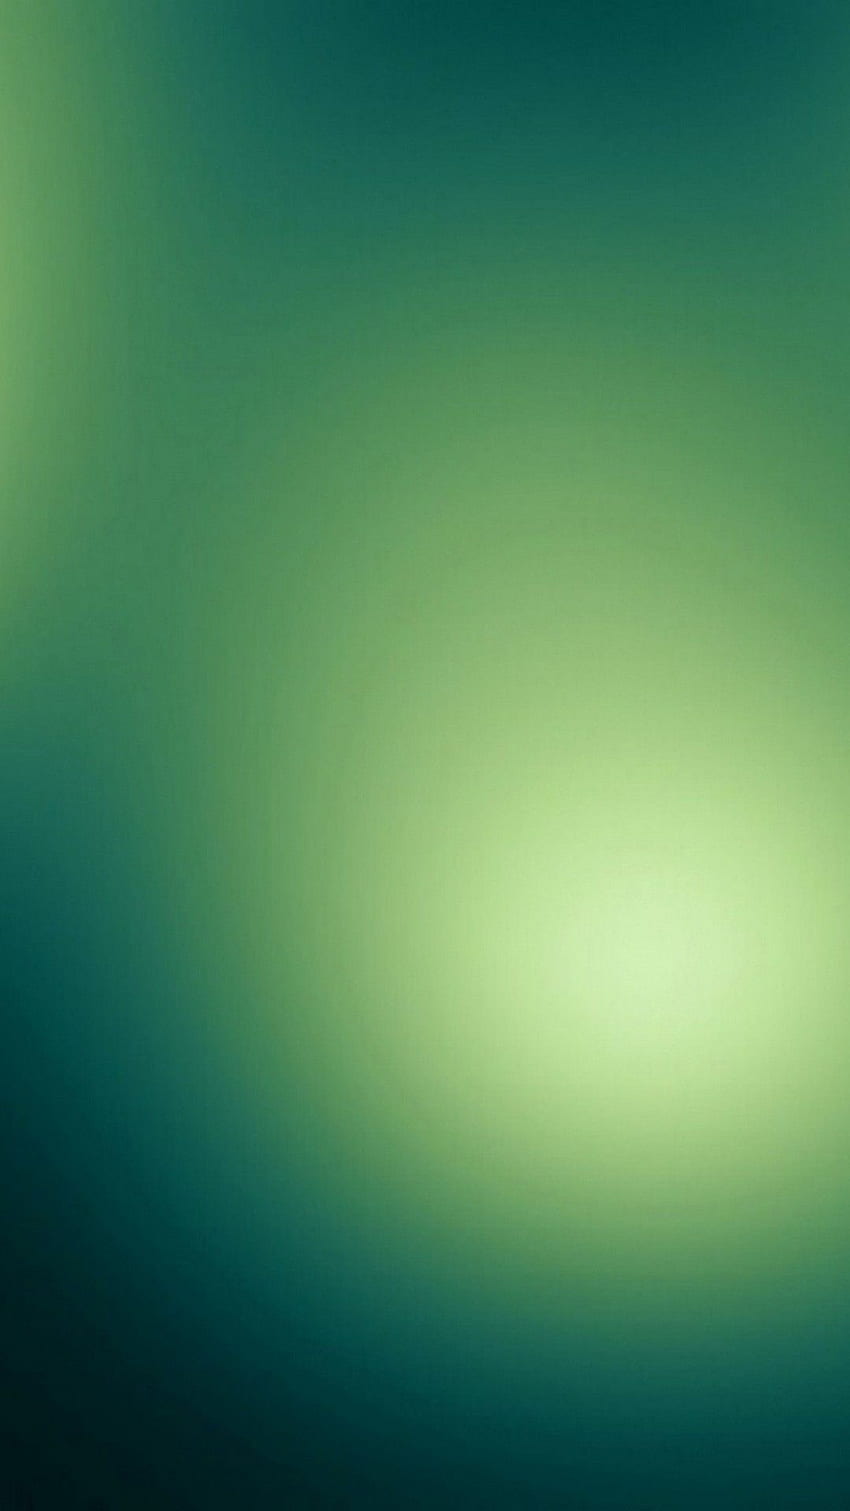 Android verde esmeralda con resolución - verde menta para iPhone, galaxia esmeralda fondo de pantalla del teléfono